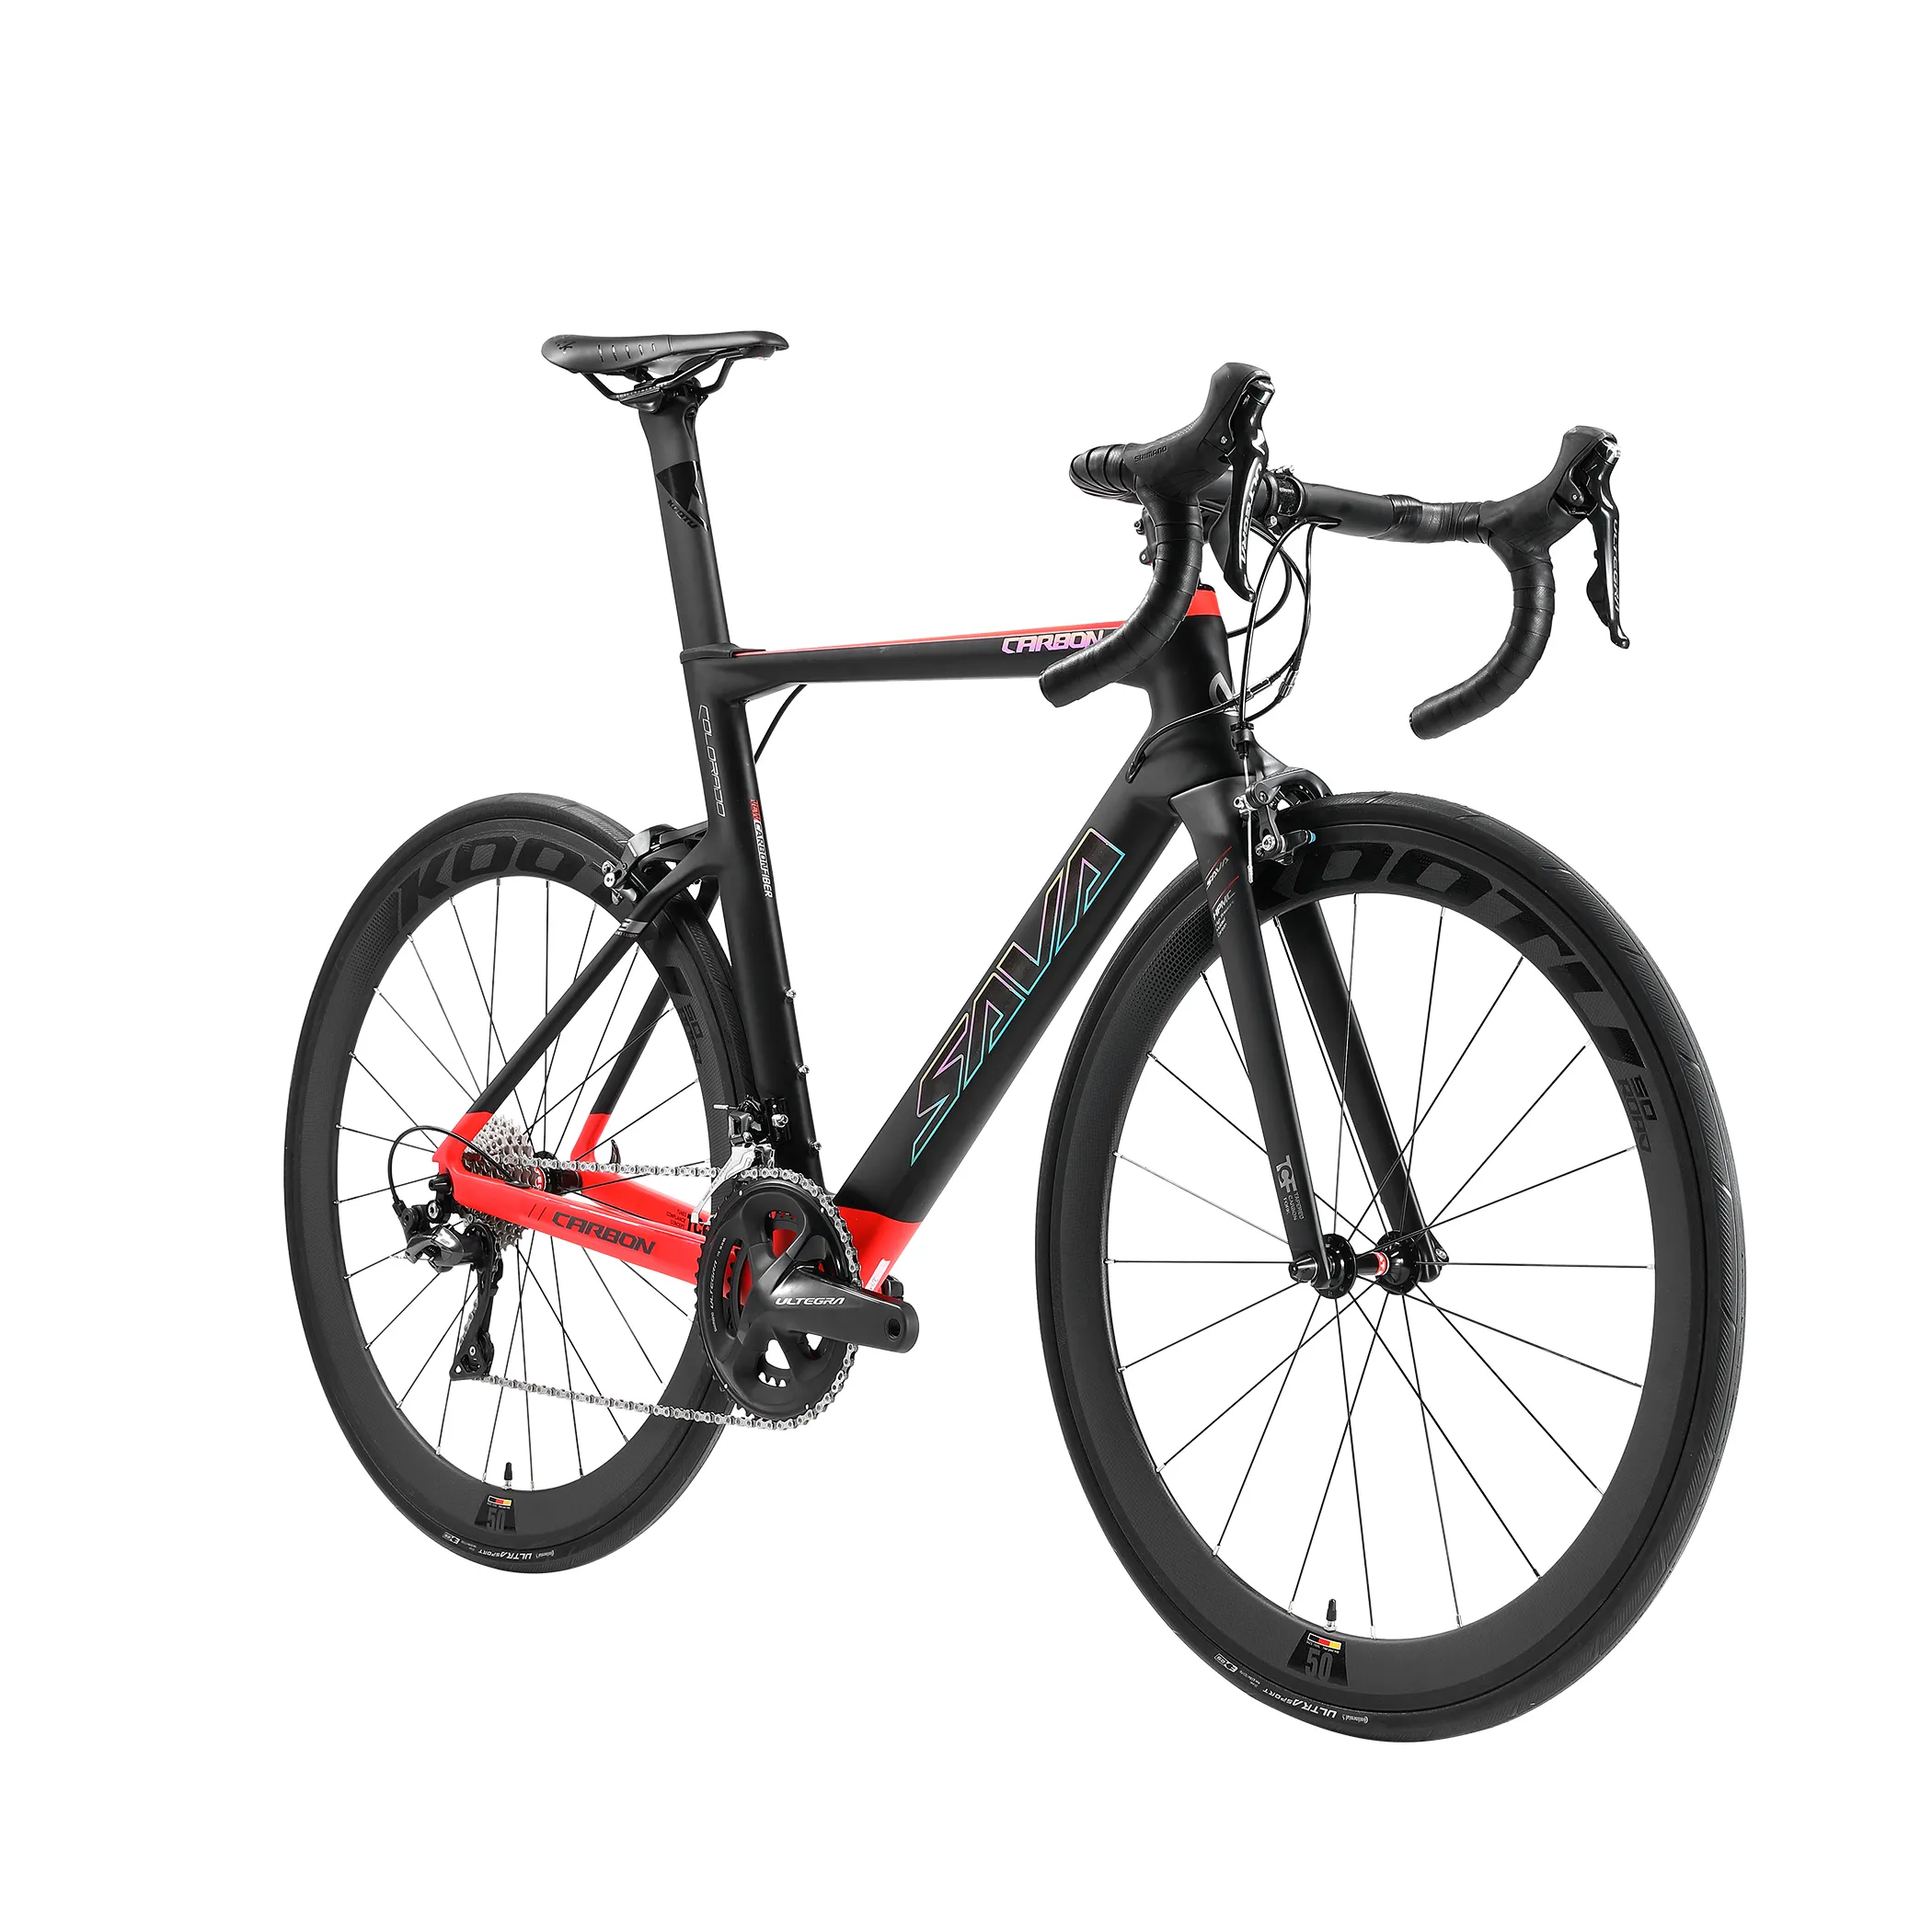 SAVA 700C 54cm dimensioni bici con telaio in fibra di carbonio in vendita SHIMANO R8000 22 velocità biciclette bici da strada in carbonio bicicletta da corsa all'ingrosso